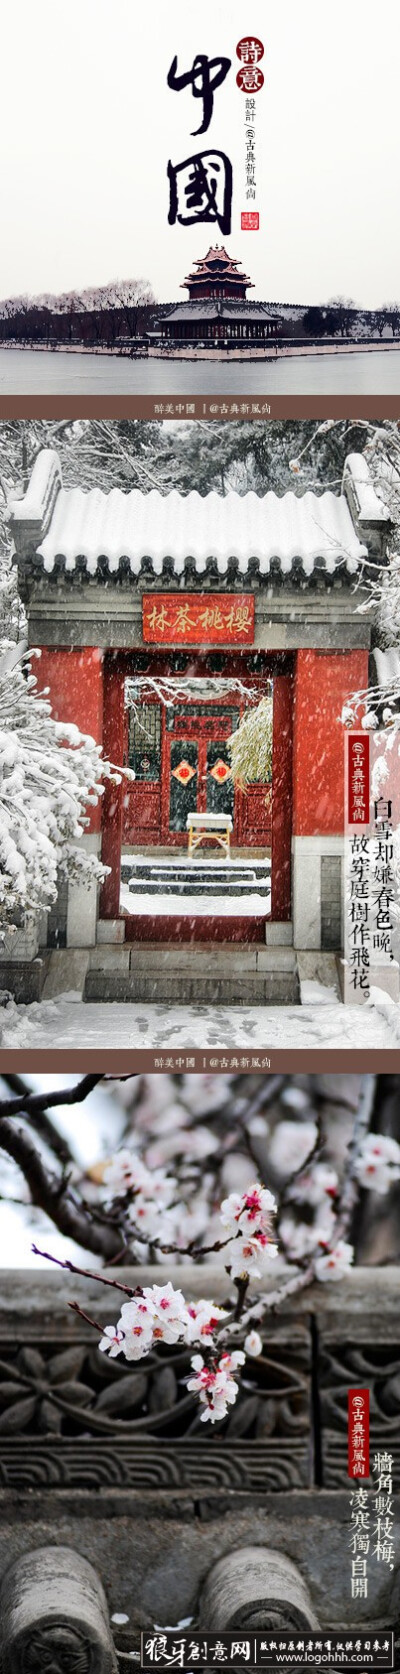 中国风 中国文化海报设计灵感 四合院中国古建筑文化海报设计案例